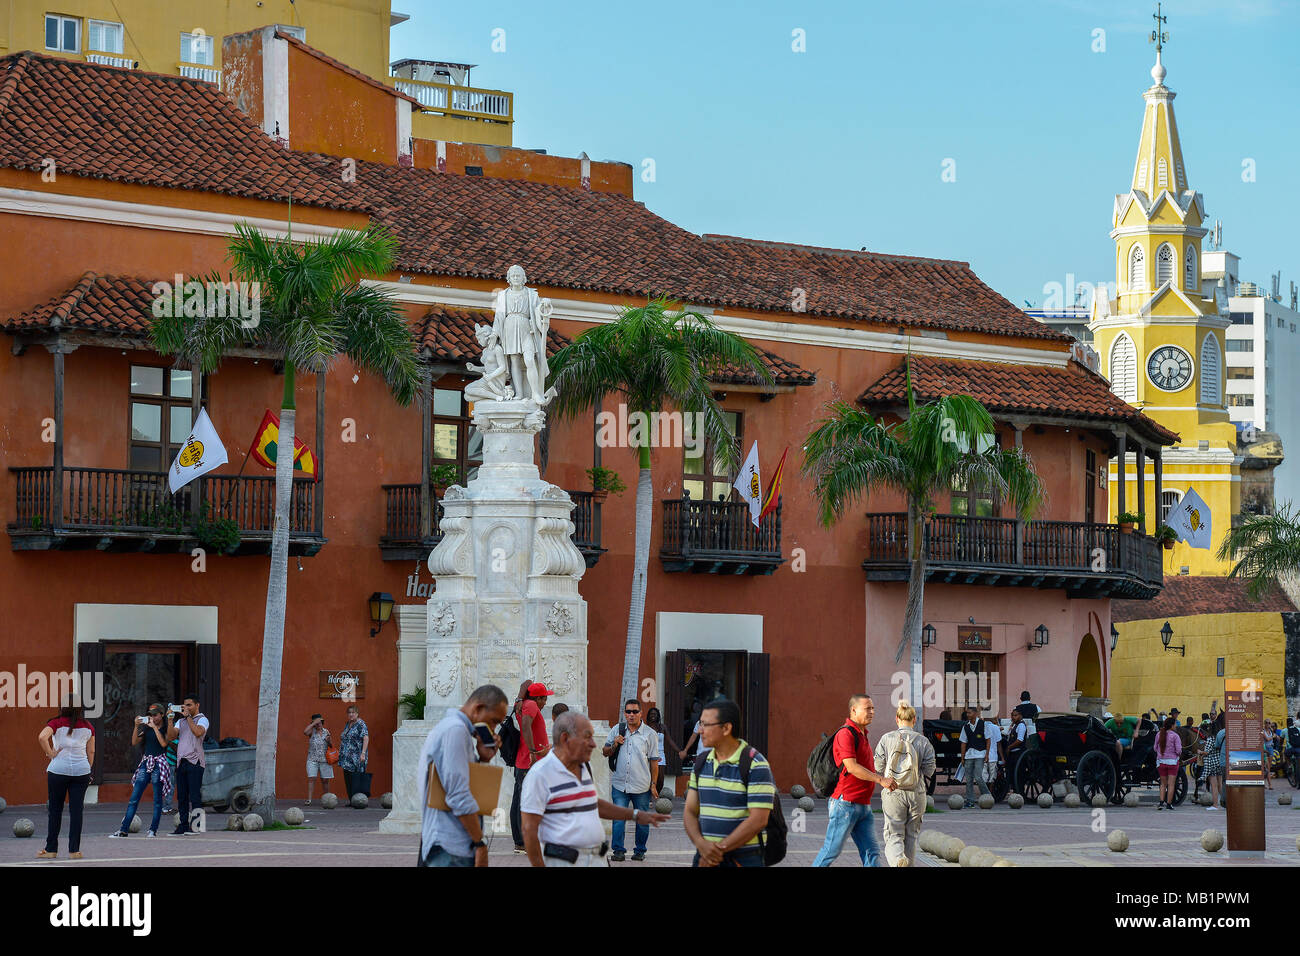 Cartagena, Kolumbien - August 3, 2017: unbekannte Menschen zu Fuß vor dem Denkmal von Christoph Kolumbus in Cartagena, Kolumbien. Stockfoto